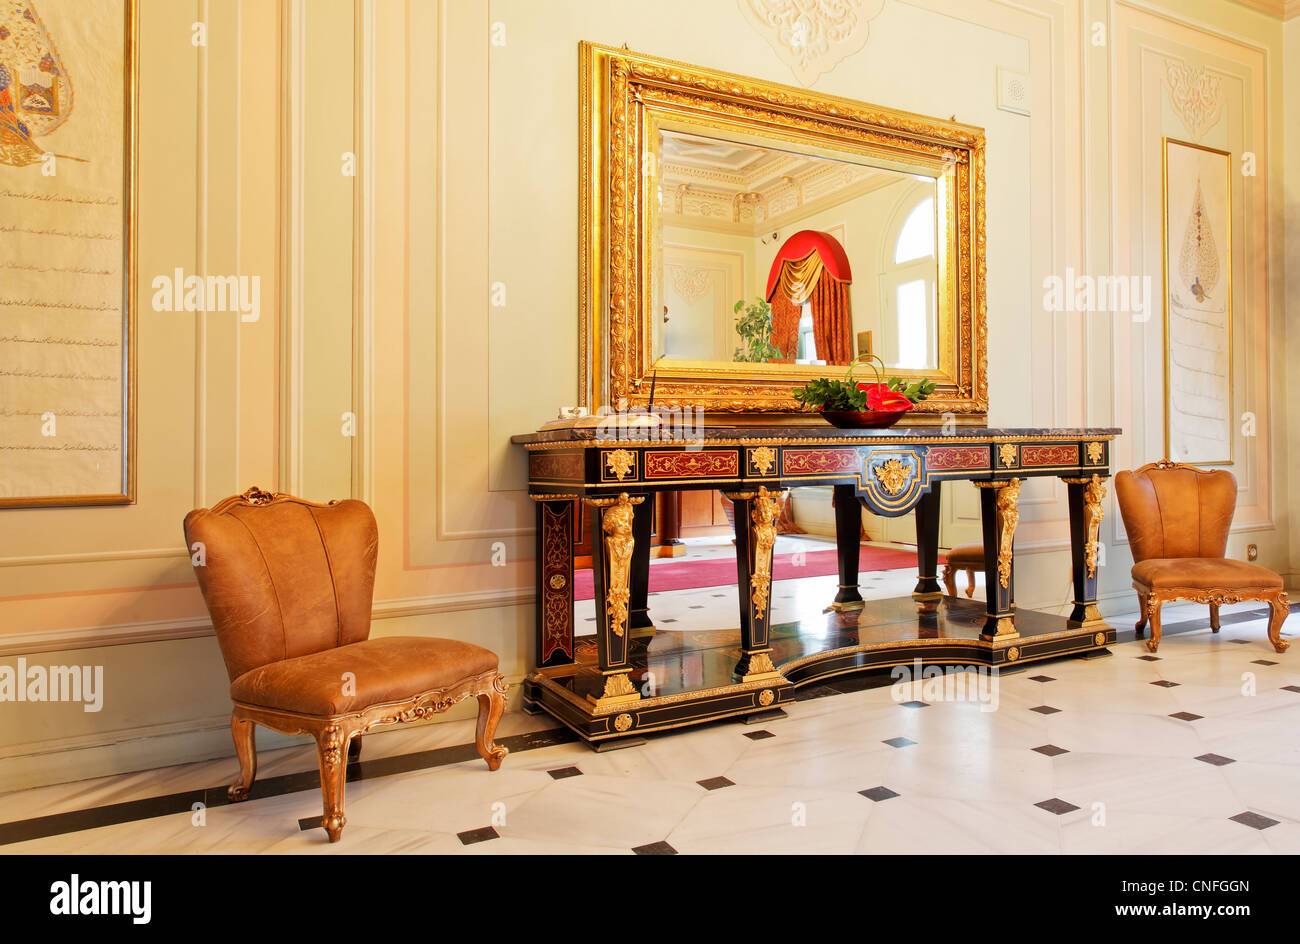 Elegante osmanischen Stil von Möbeln und Inneneinrichtungen mit getäfelten Wänden, Besucher-Stühle, großer Spiegel, Beistelltisch Stockfoto